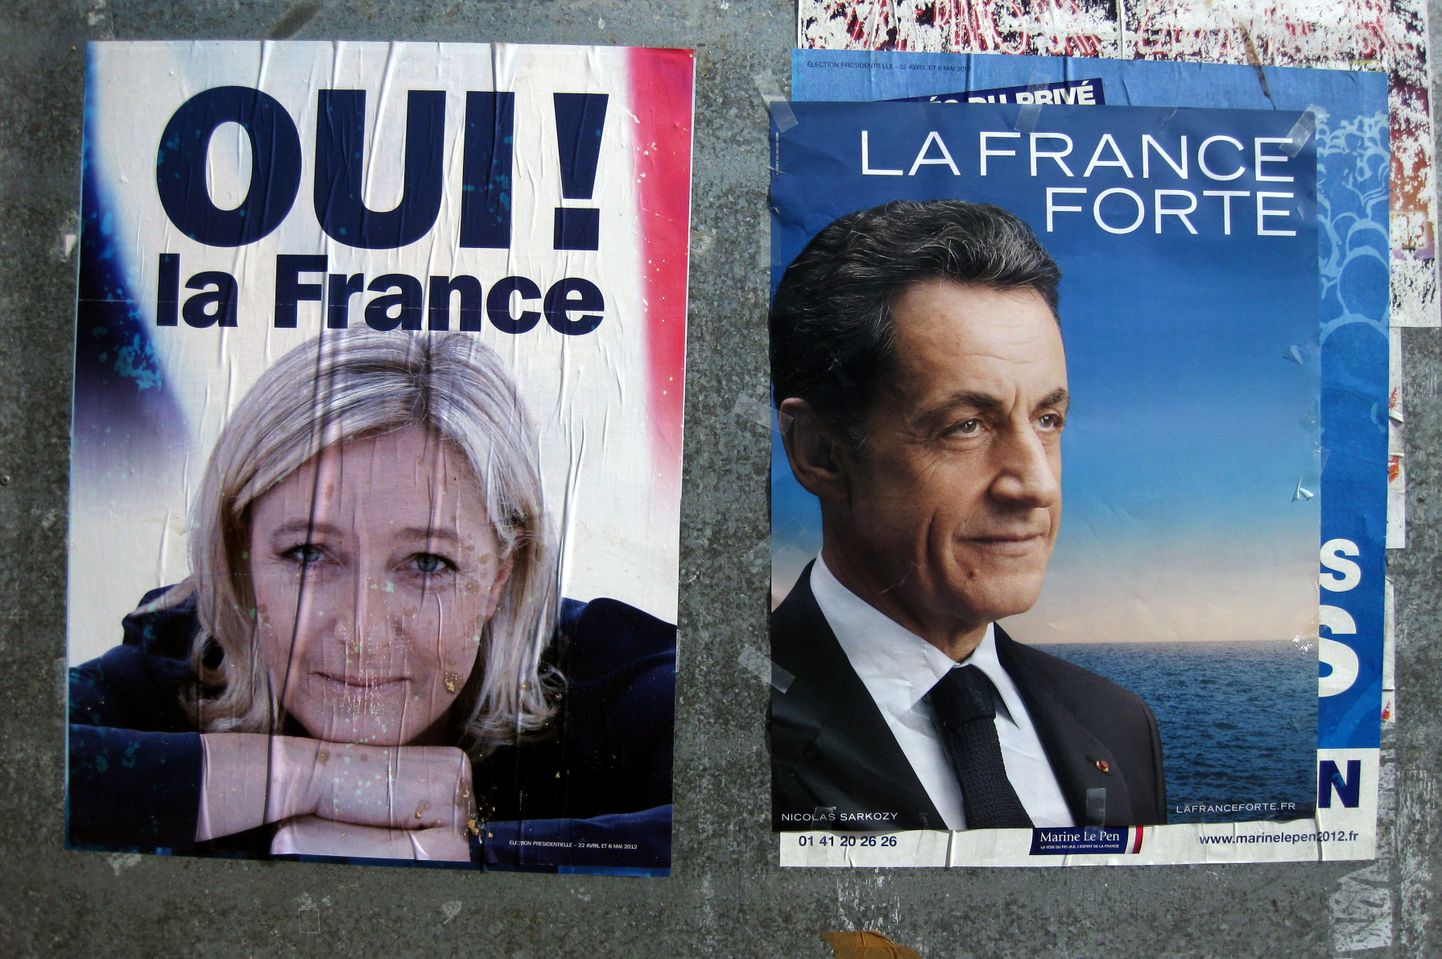 Marine Le Pen ja Nicolas Sarkozy valimisplakateil.